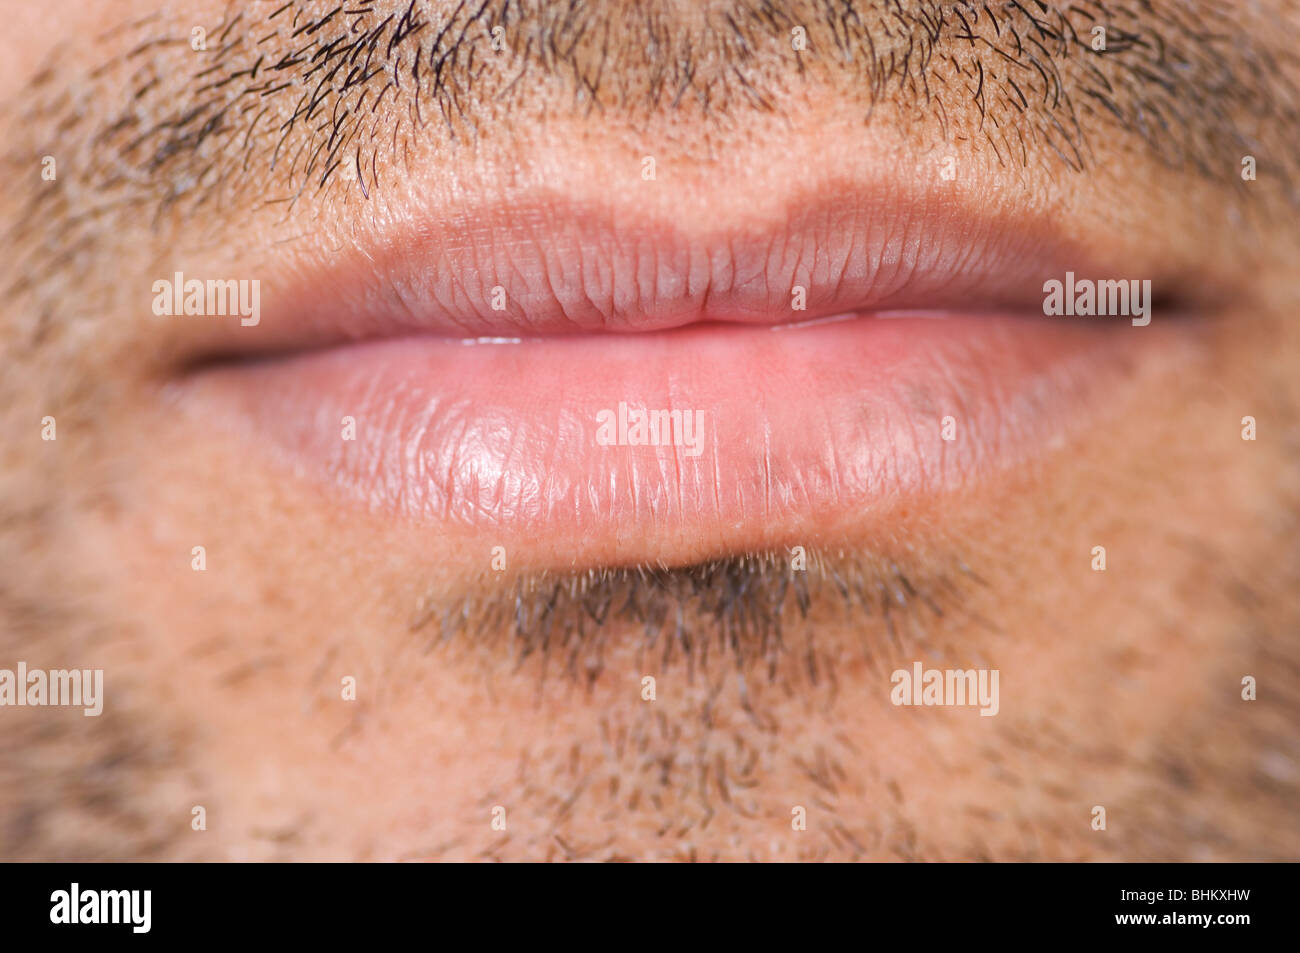 Mans lips immagini e fotografie stock ad alta risoluzione - Alamy